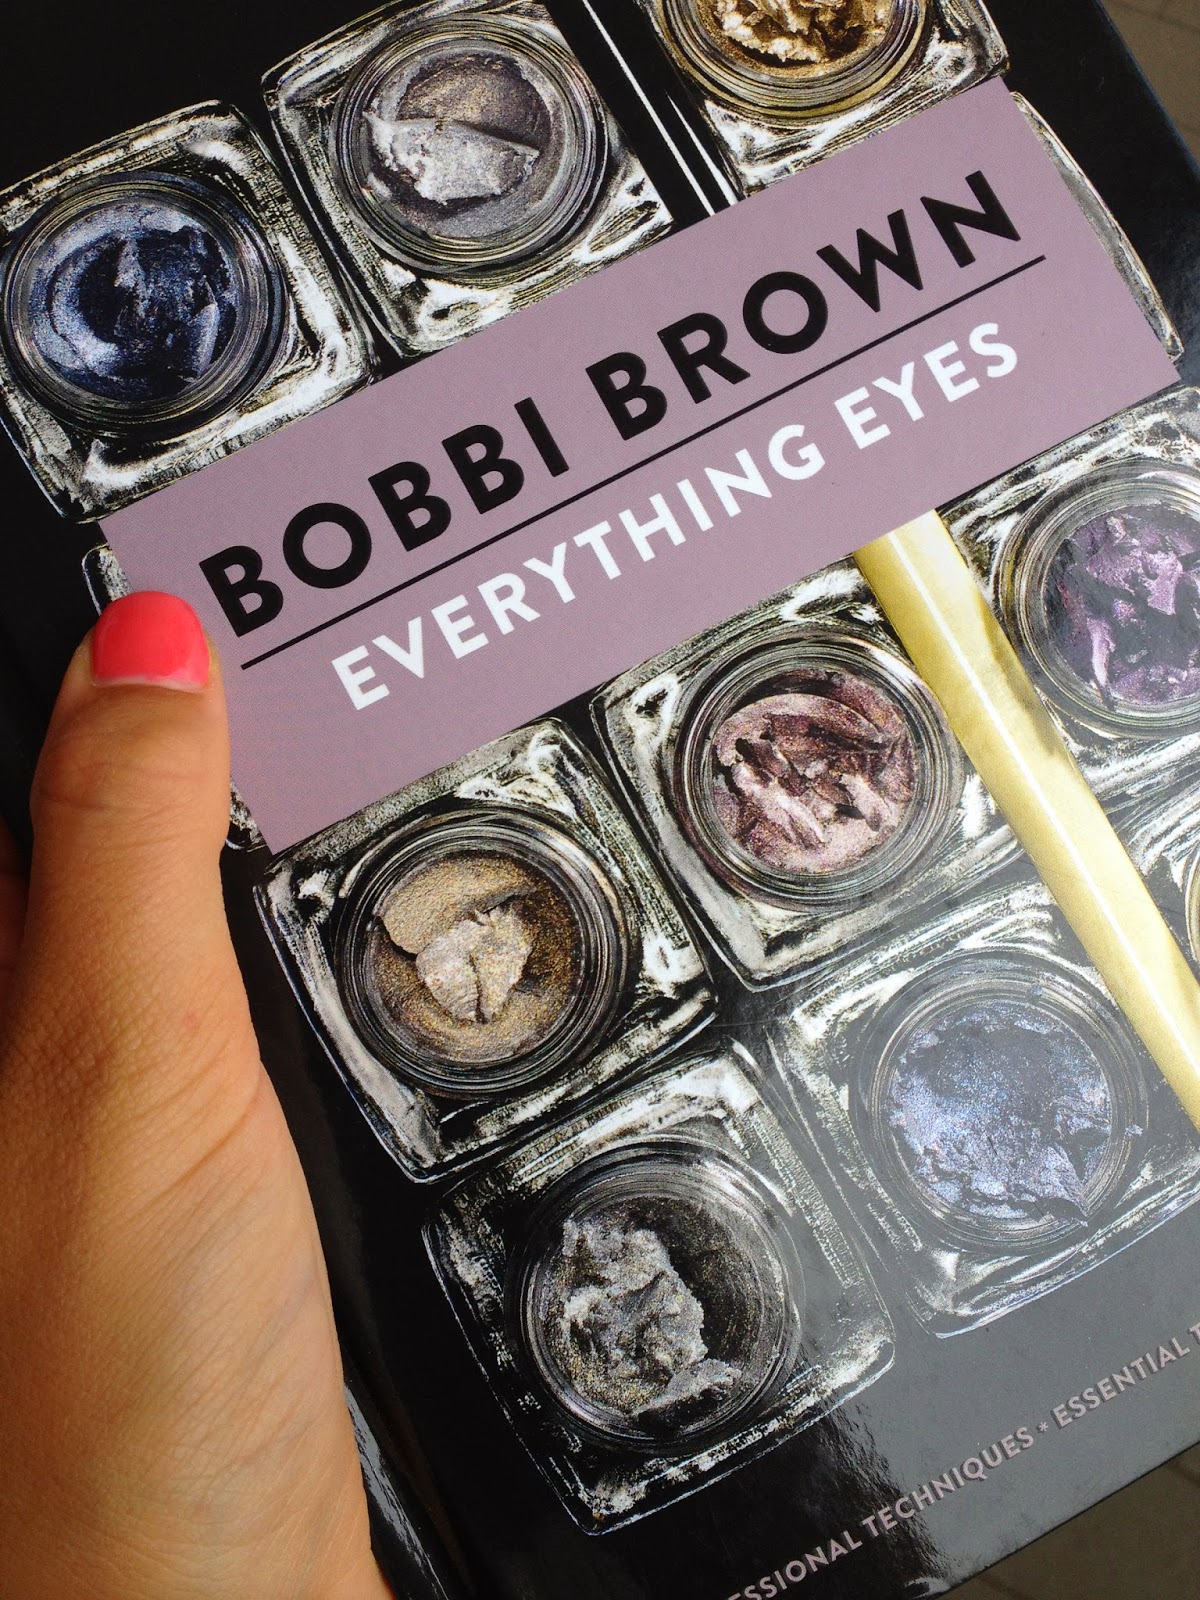 Bobbi Brown's Book